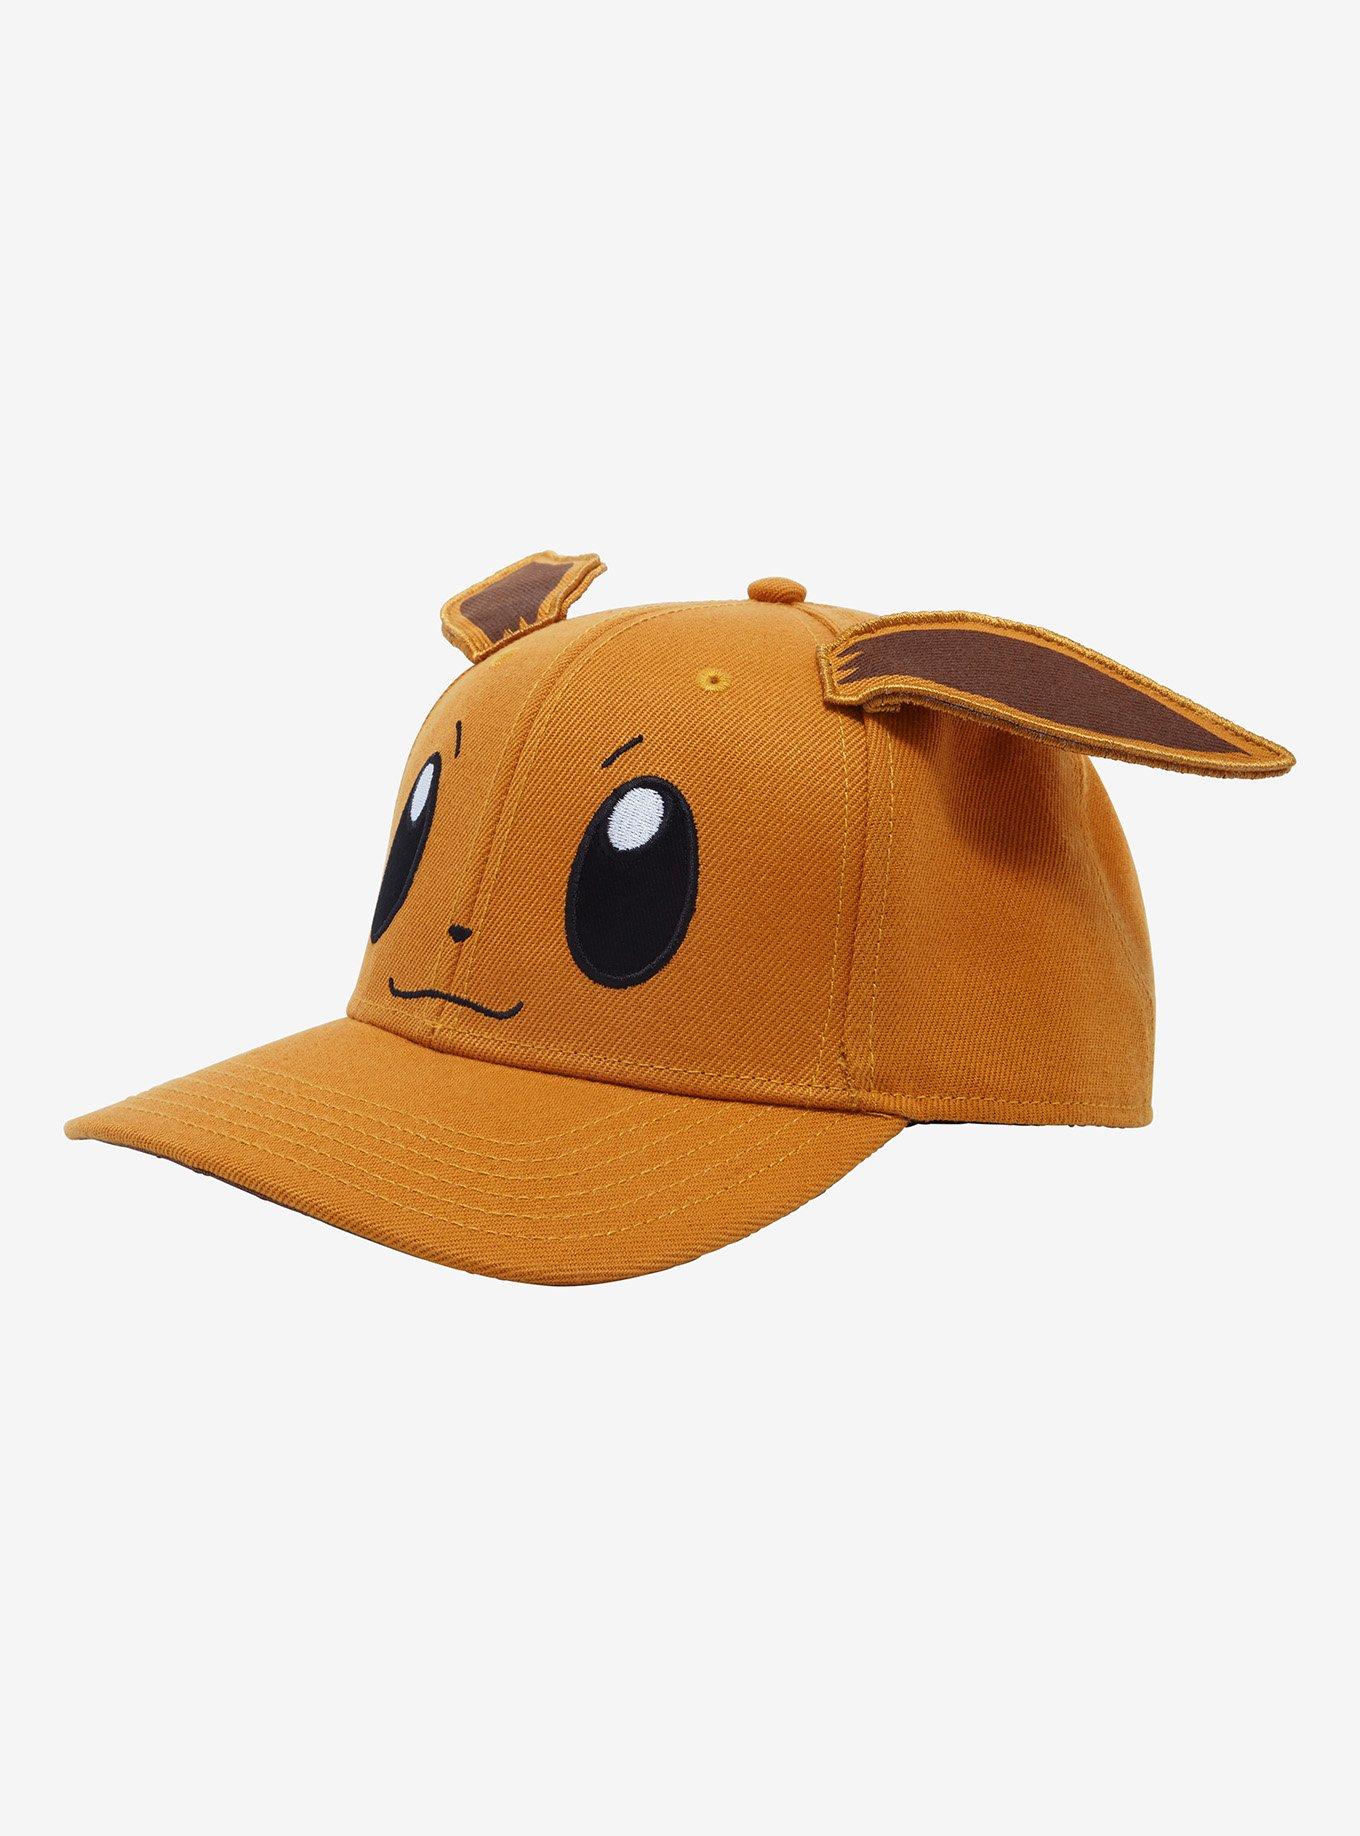 Eevee 3D Hat - Pokémon - Spencer's